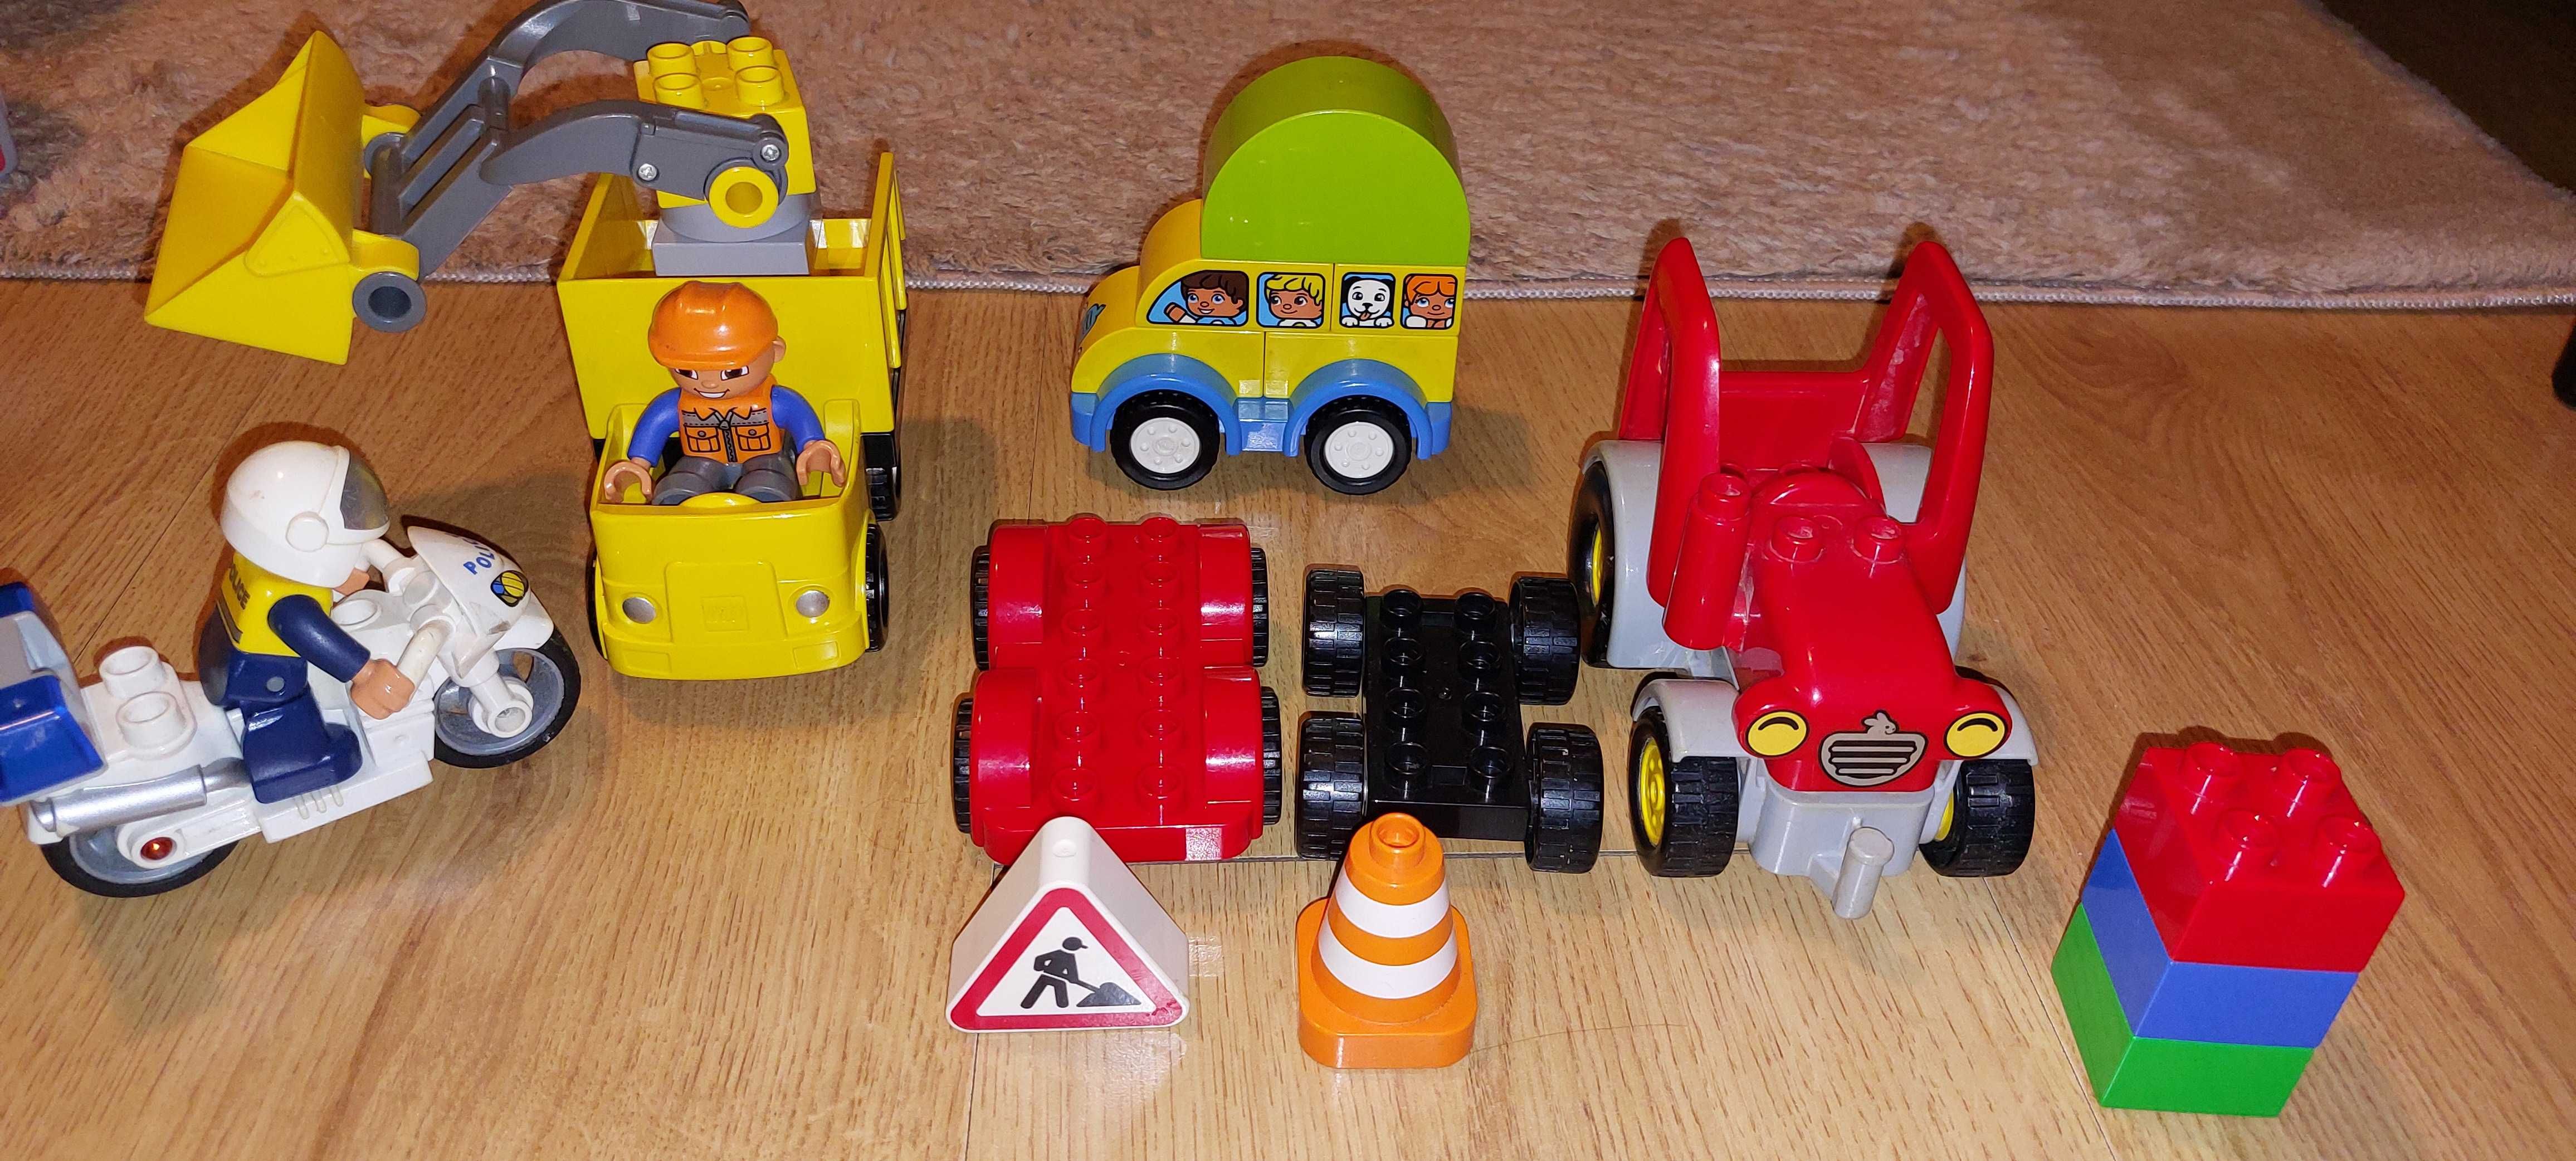 Lego Duplo motor policyjny, wywrotko- spychacz/ koparka, traktor, auta